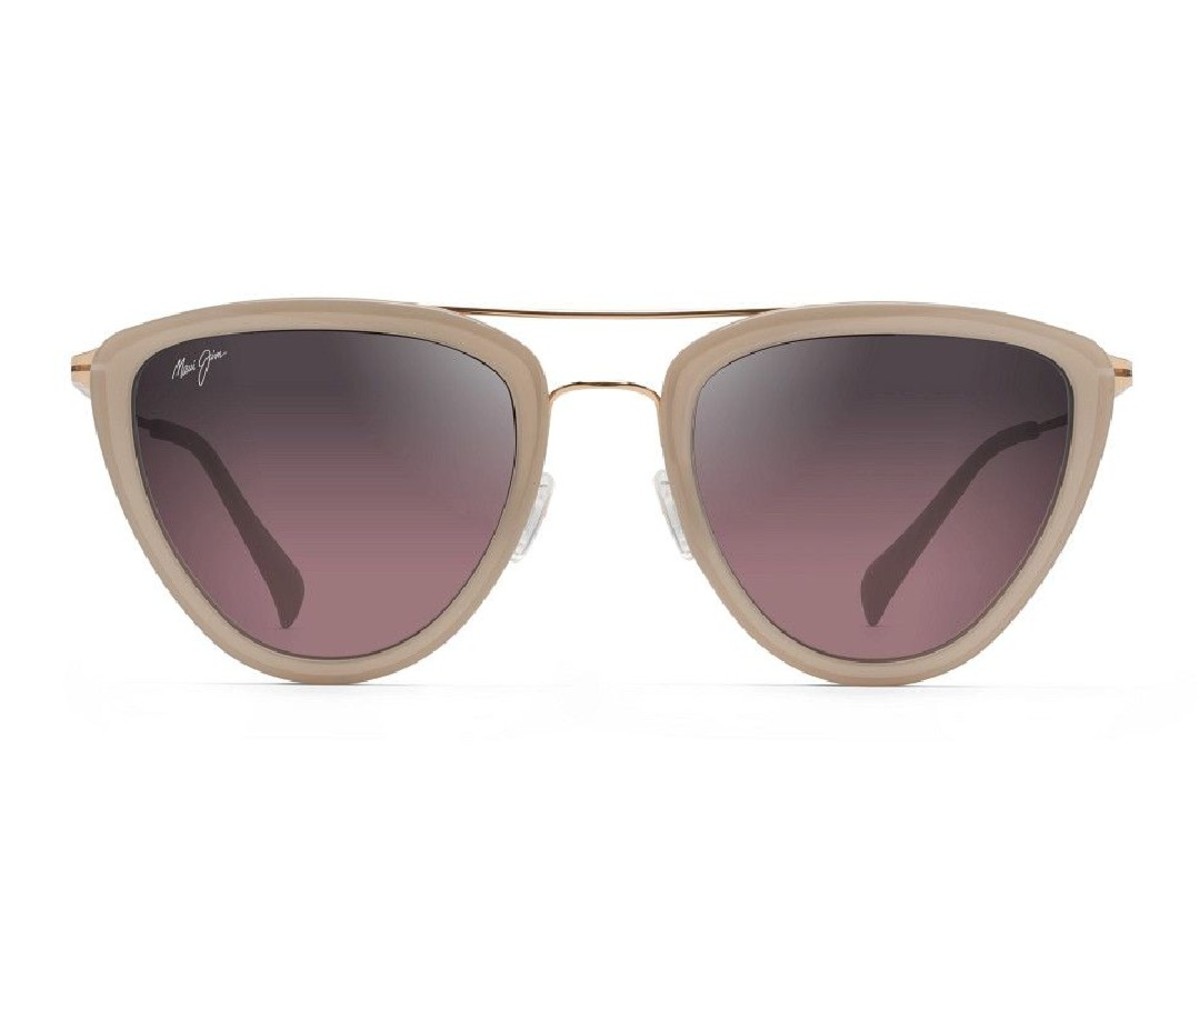 Pair of Maui Jim brand Hunakai style polarized sunglasses